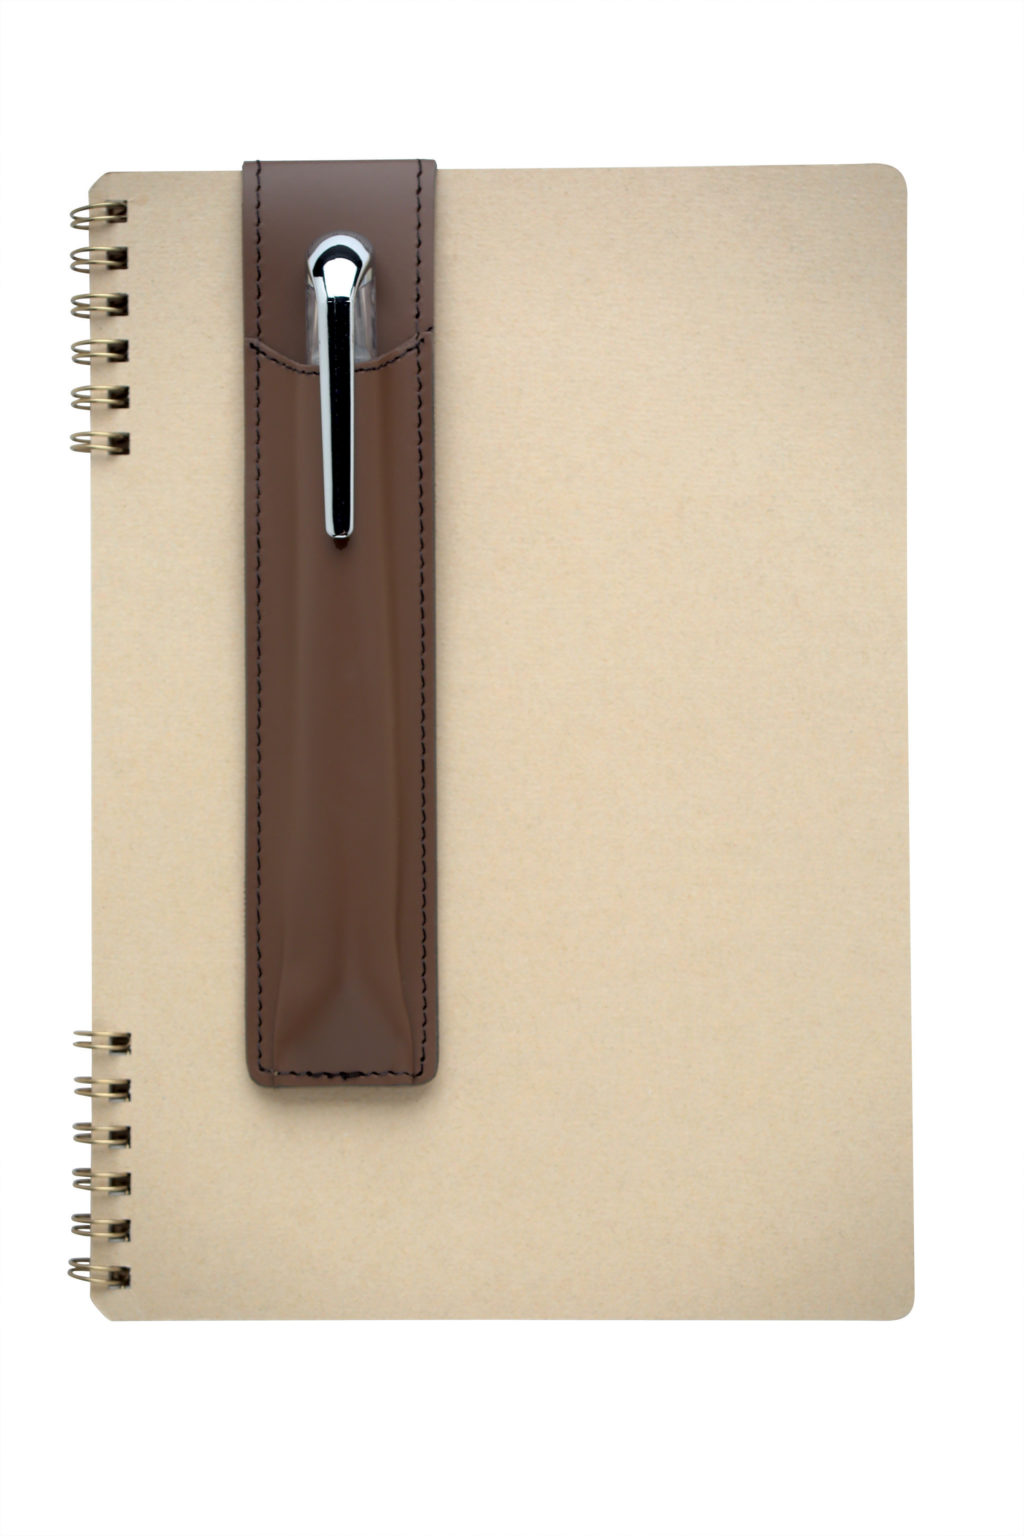 Itoya Journal Sidekick Magnetic Pen Holder, Brown 